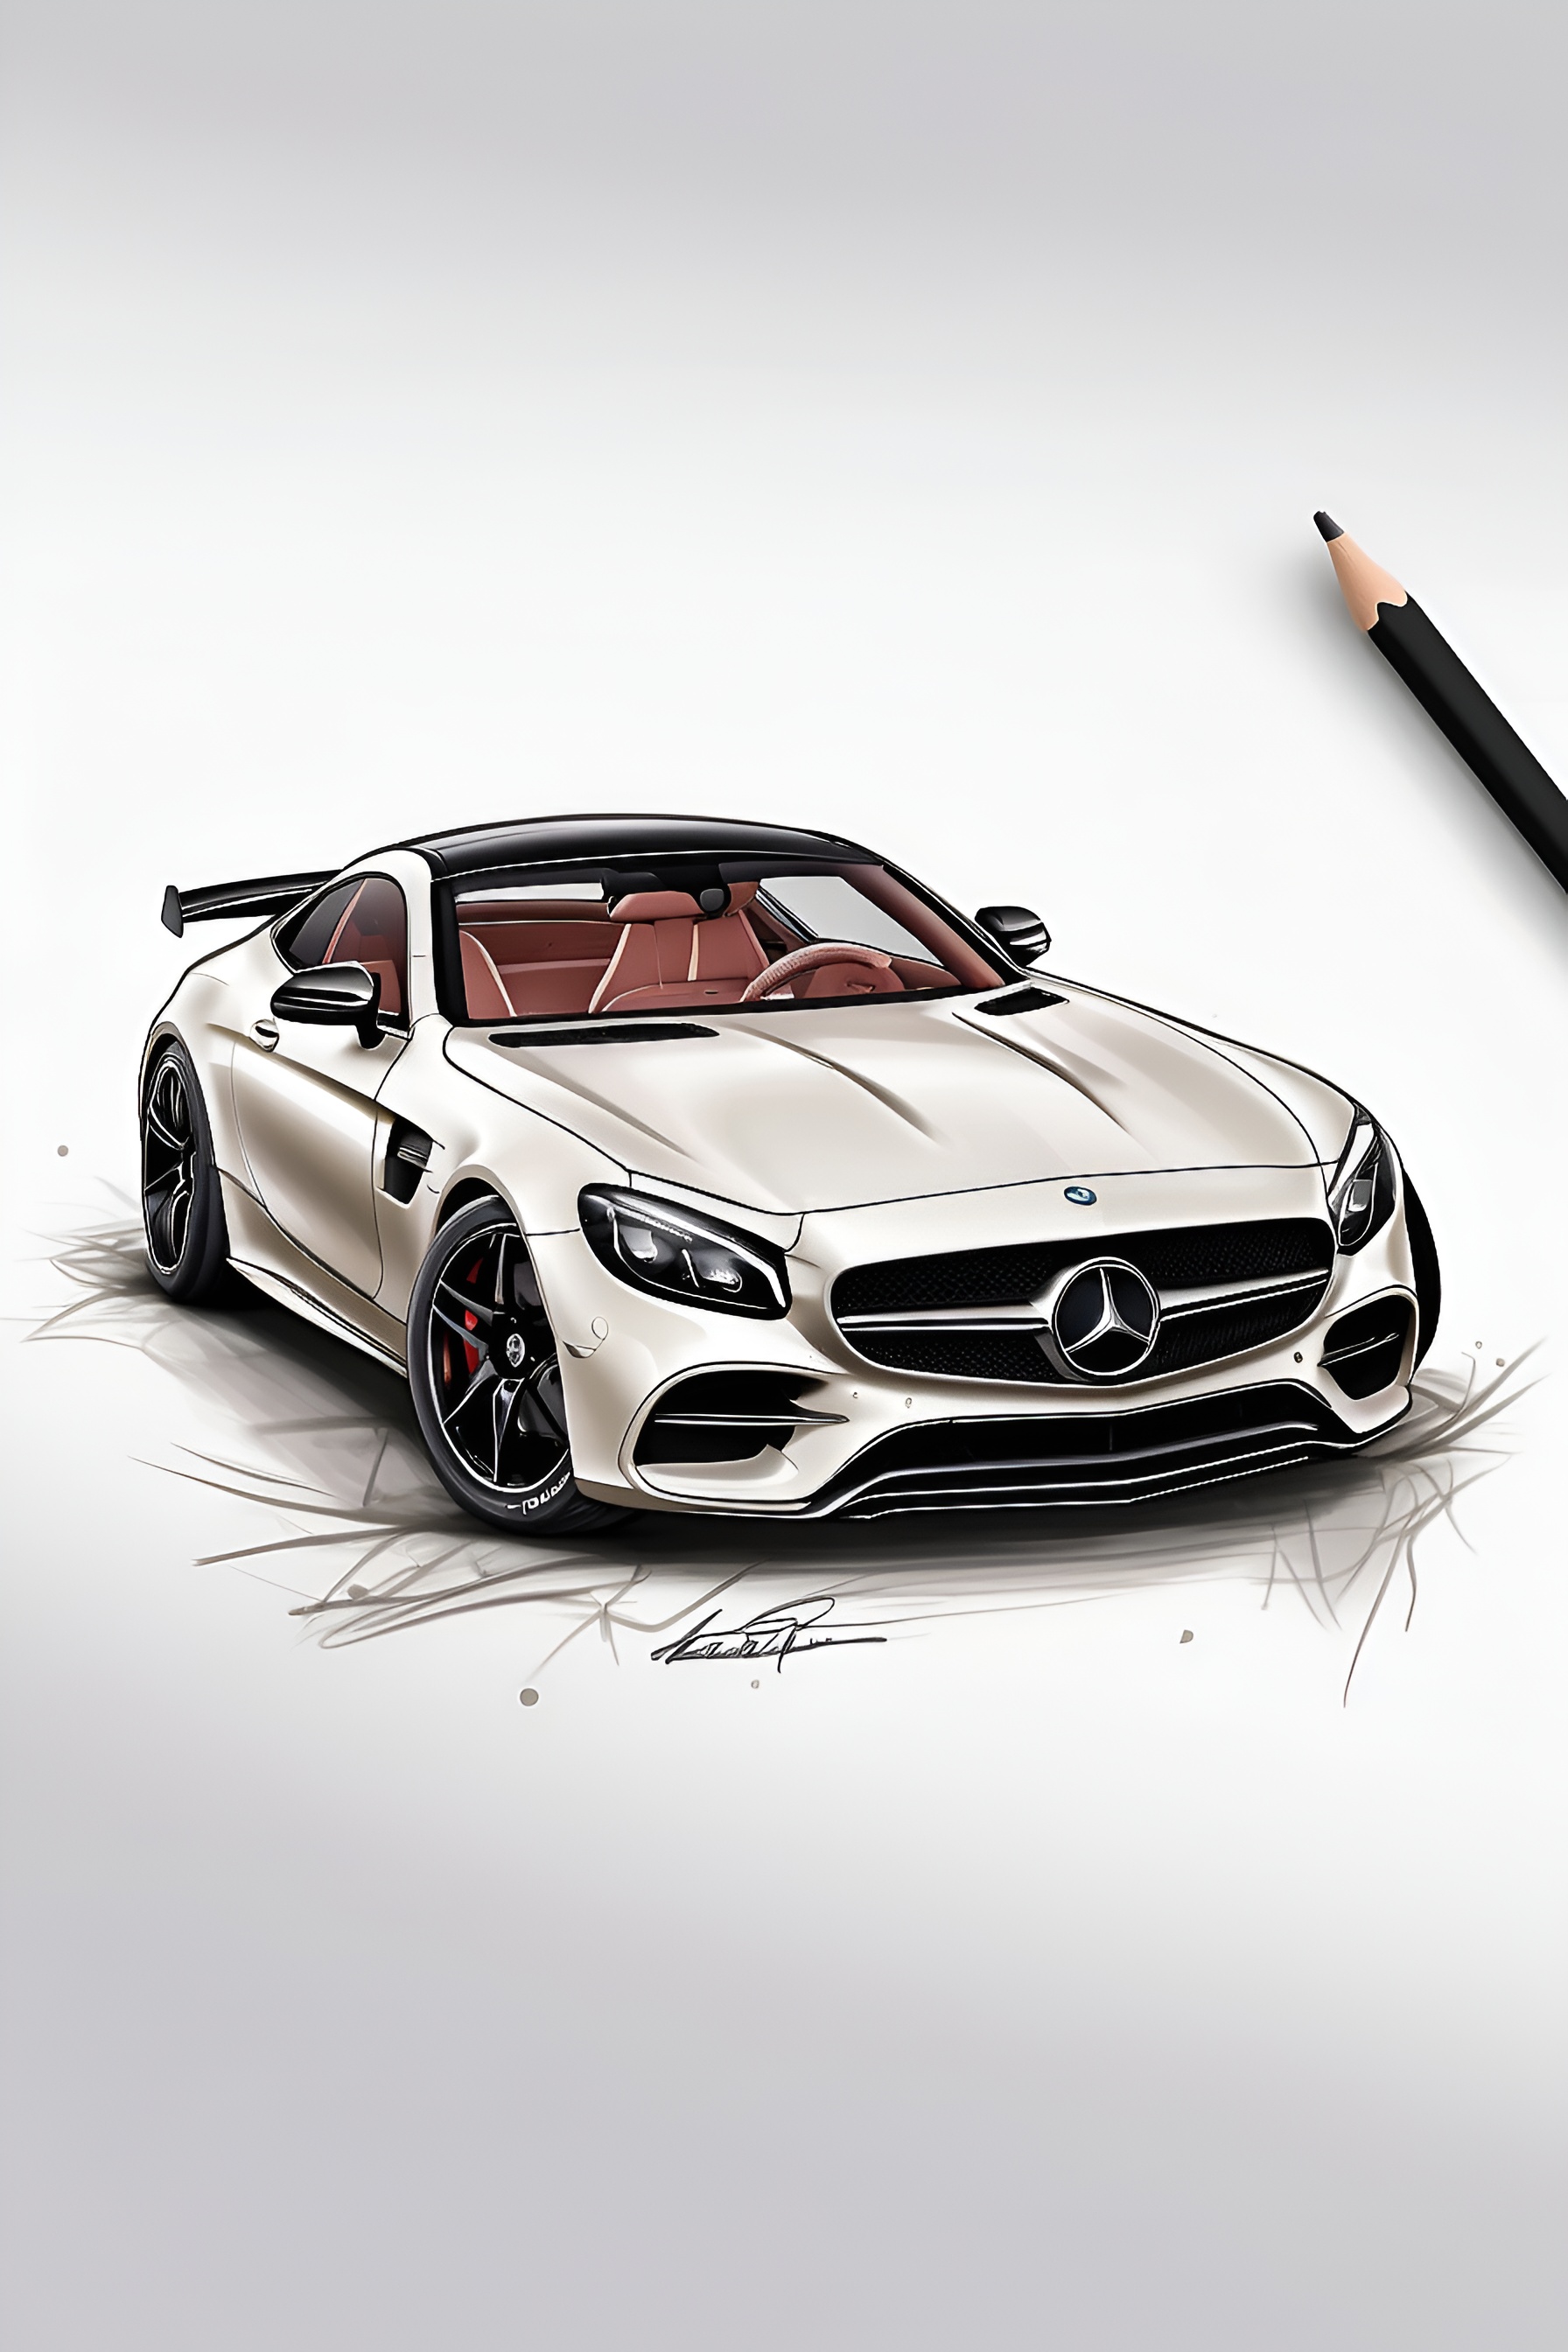 Default_Custom_design_for_tshirt_with_Mercedes_supercar_3_c88a2313-cc36-4546-a1d6-72e0b890842a_1.jpg